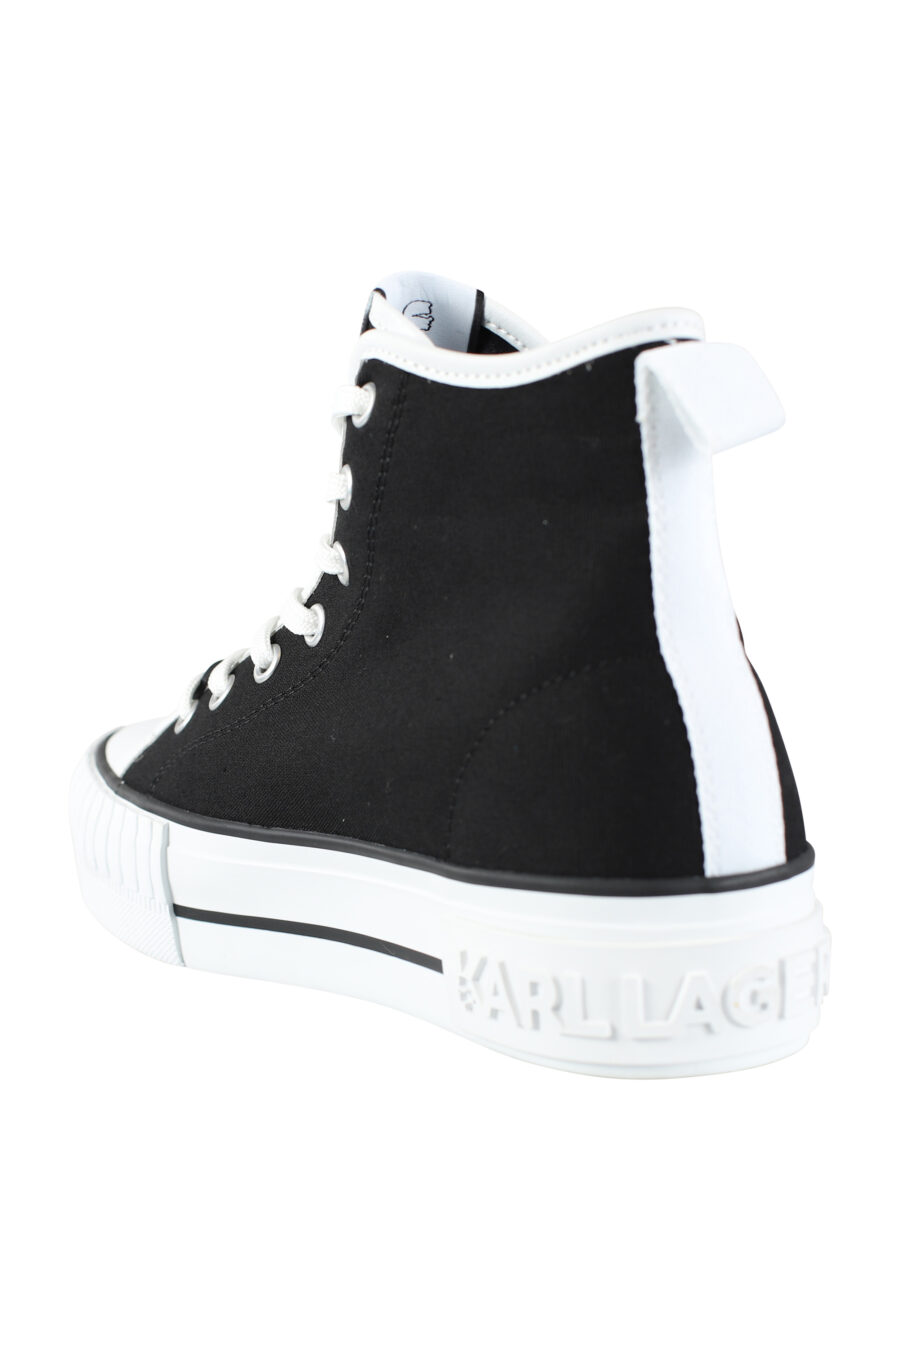 Zapatillas altas negras estilo converse con logo "karl" en goma - IMG 9583